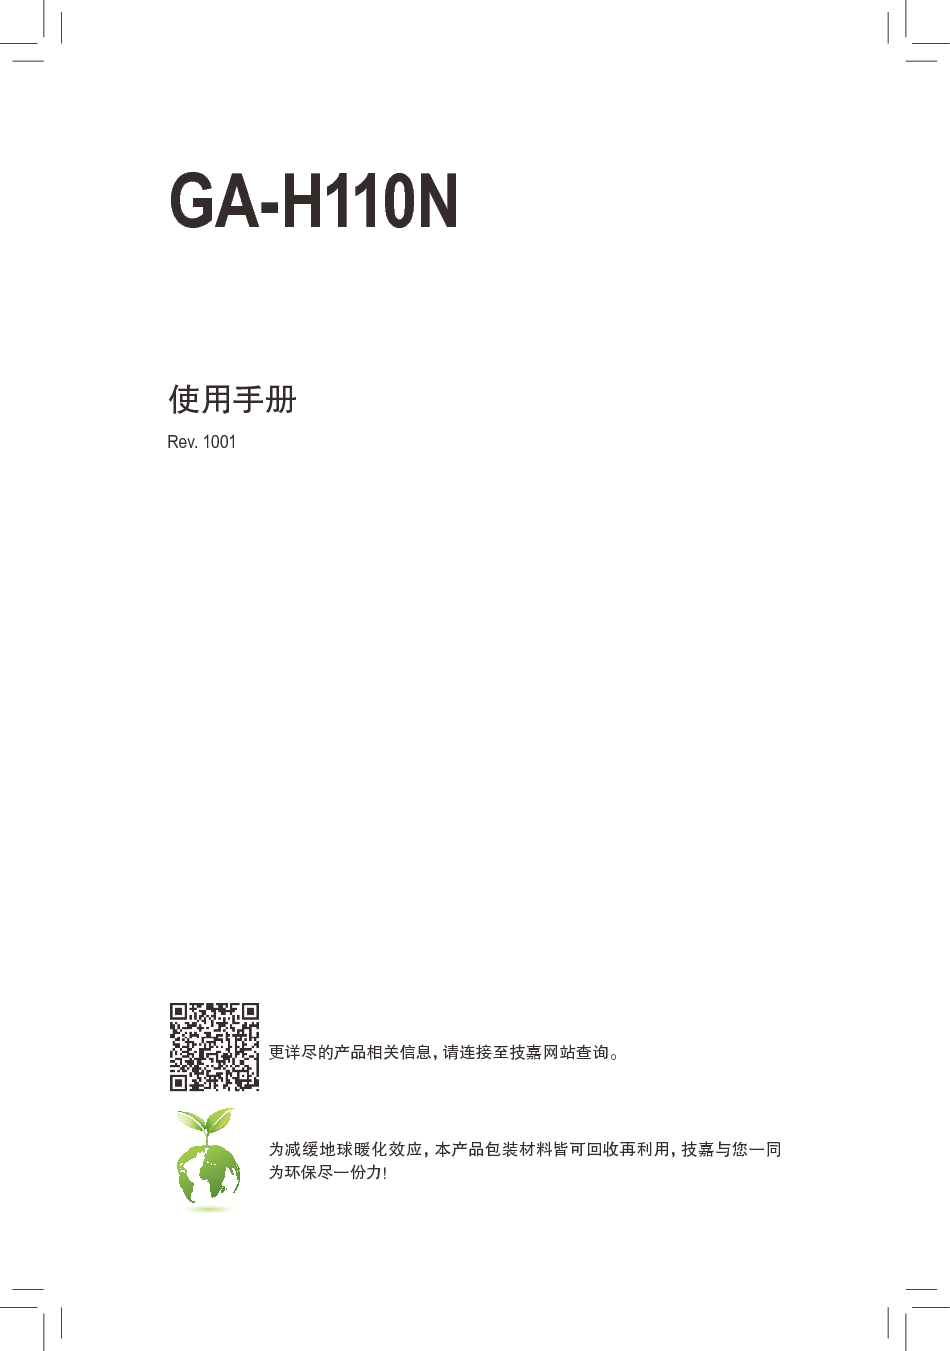 技嘉 Gigabyte GA-H110N 使用手册 封面